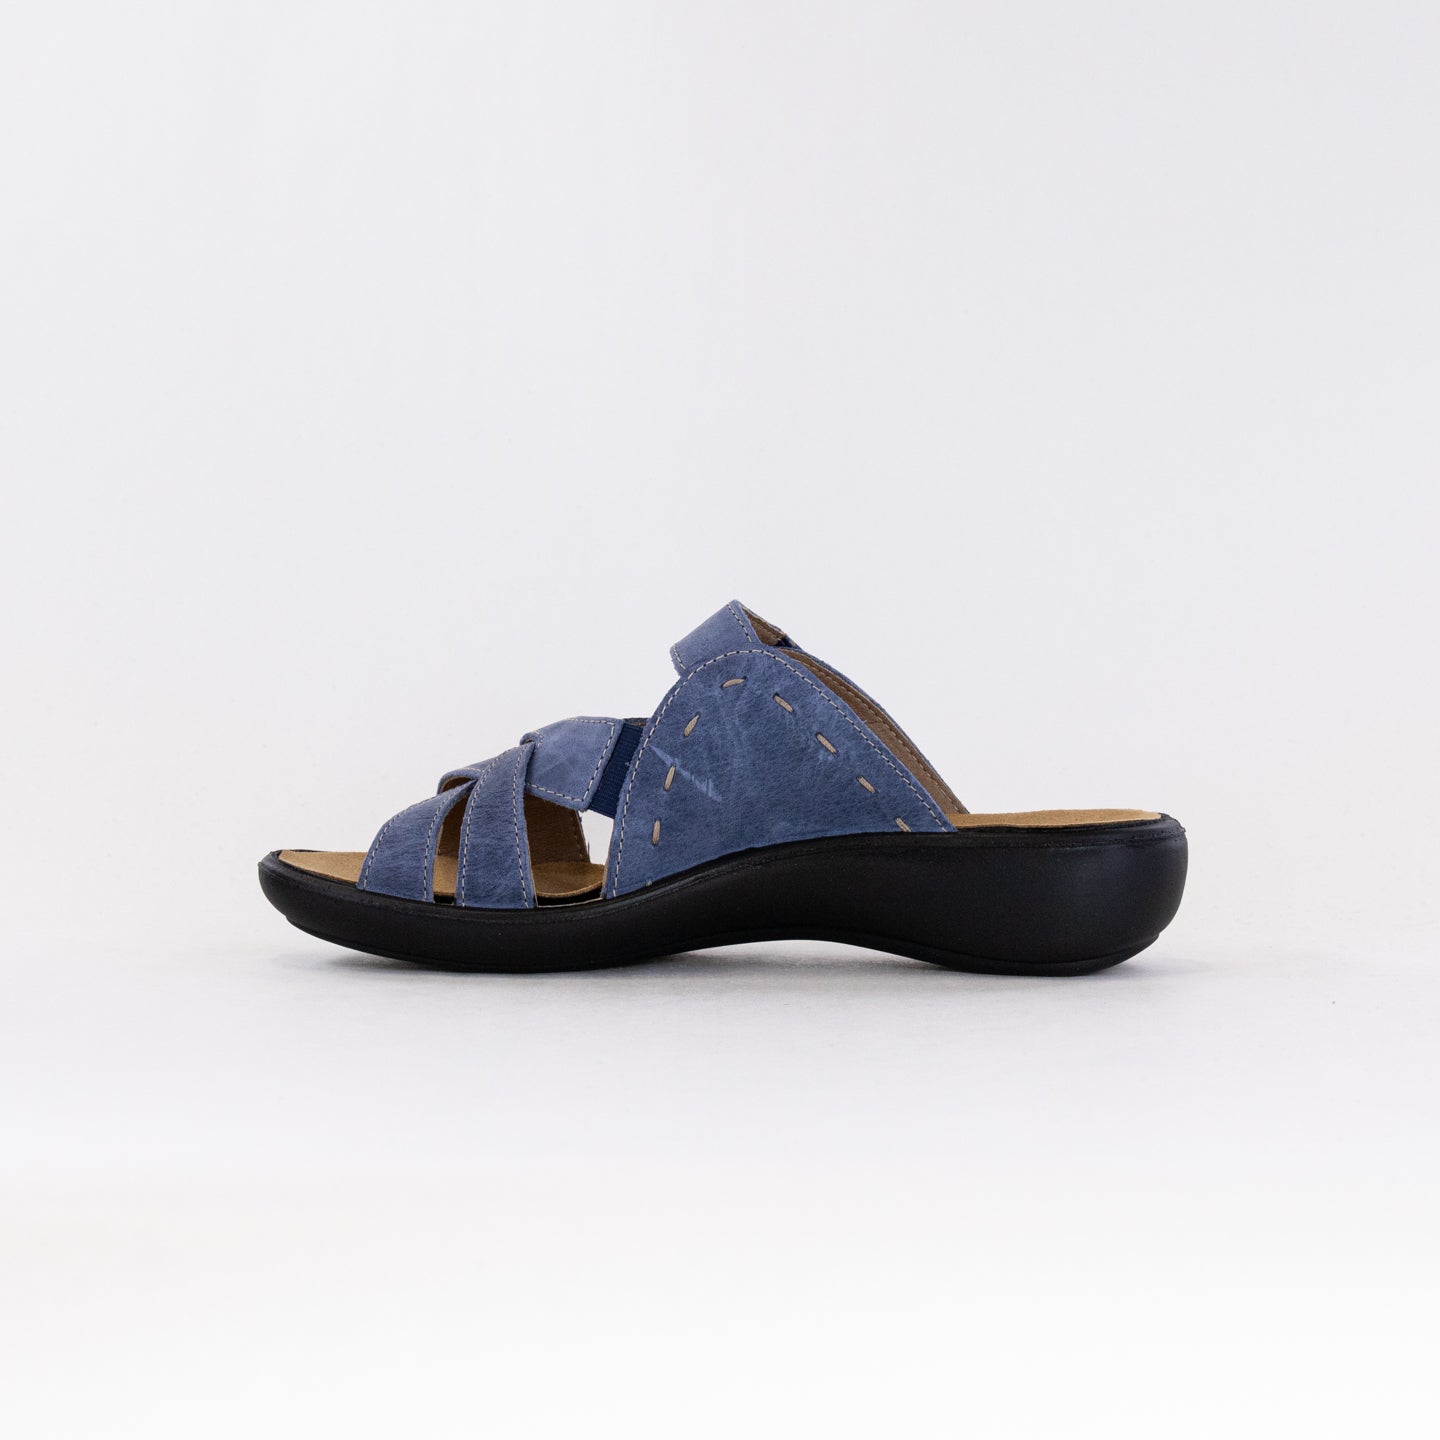 Romika Ibiza 99 Sandal (Women's) - Dark Blue